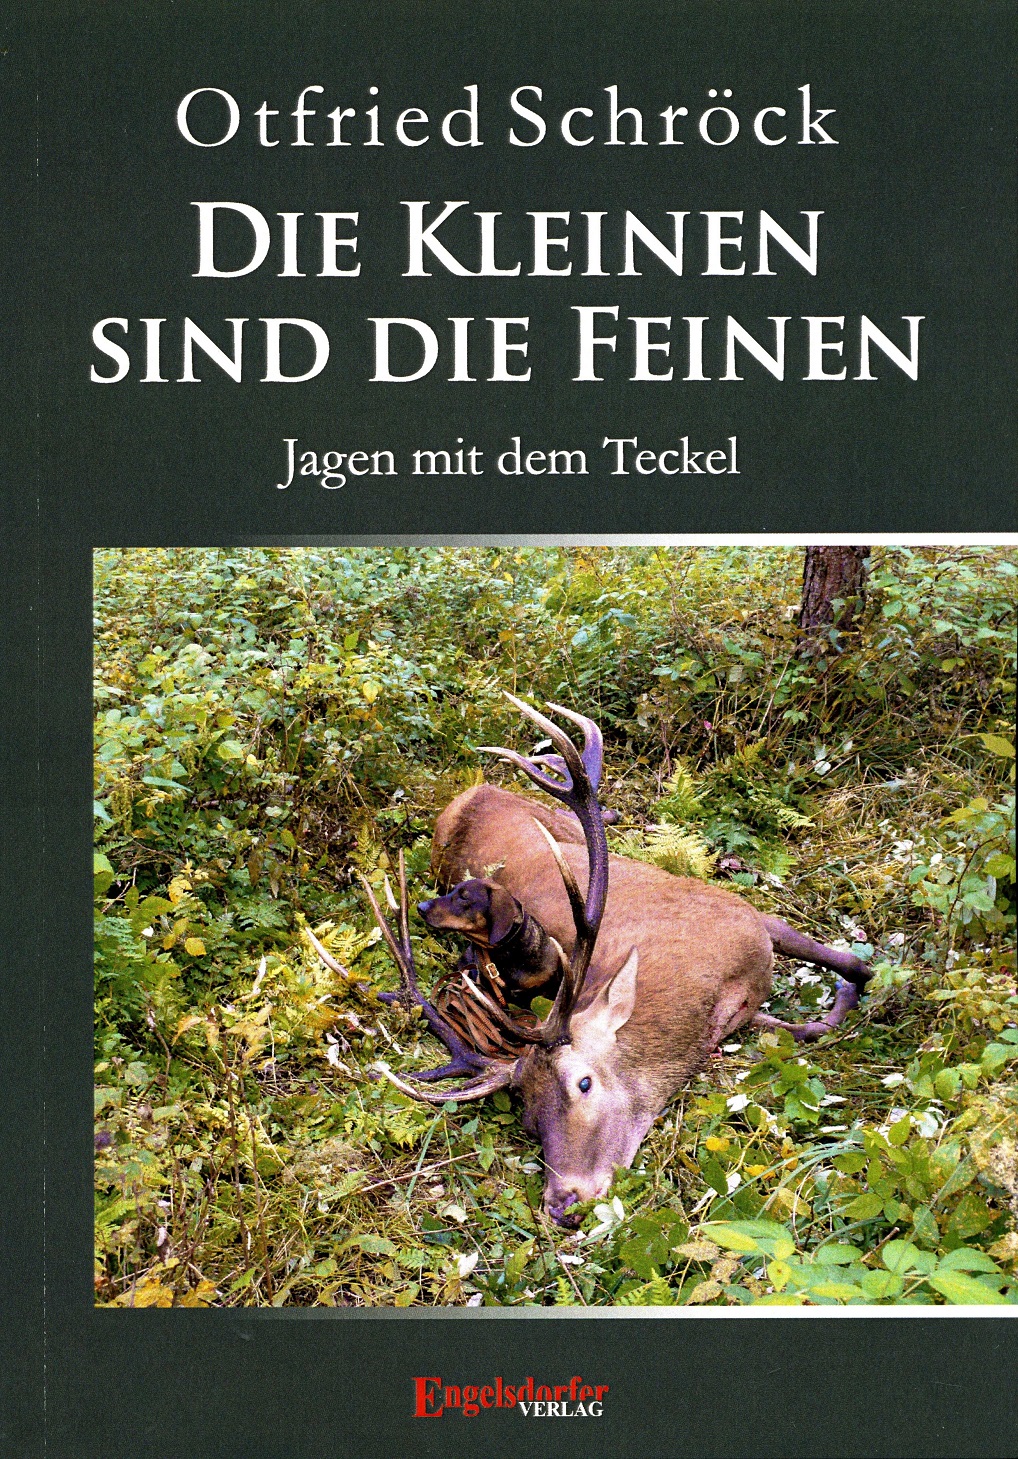 Cover-Teckel-0,35